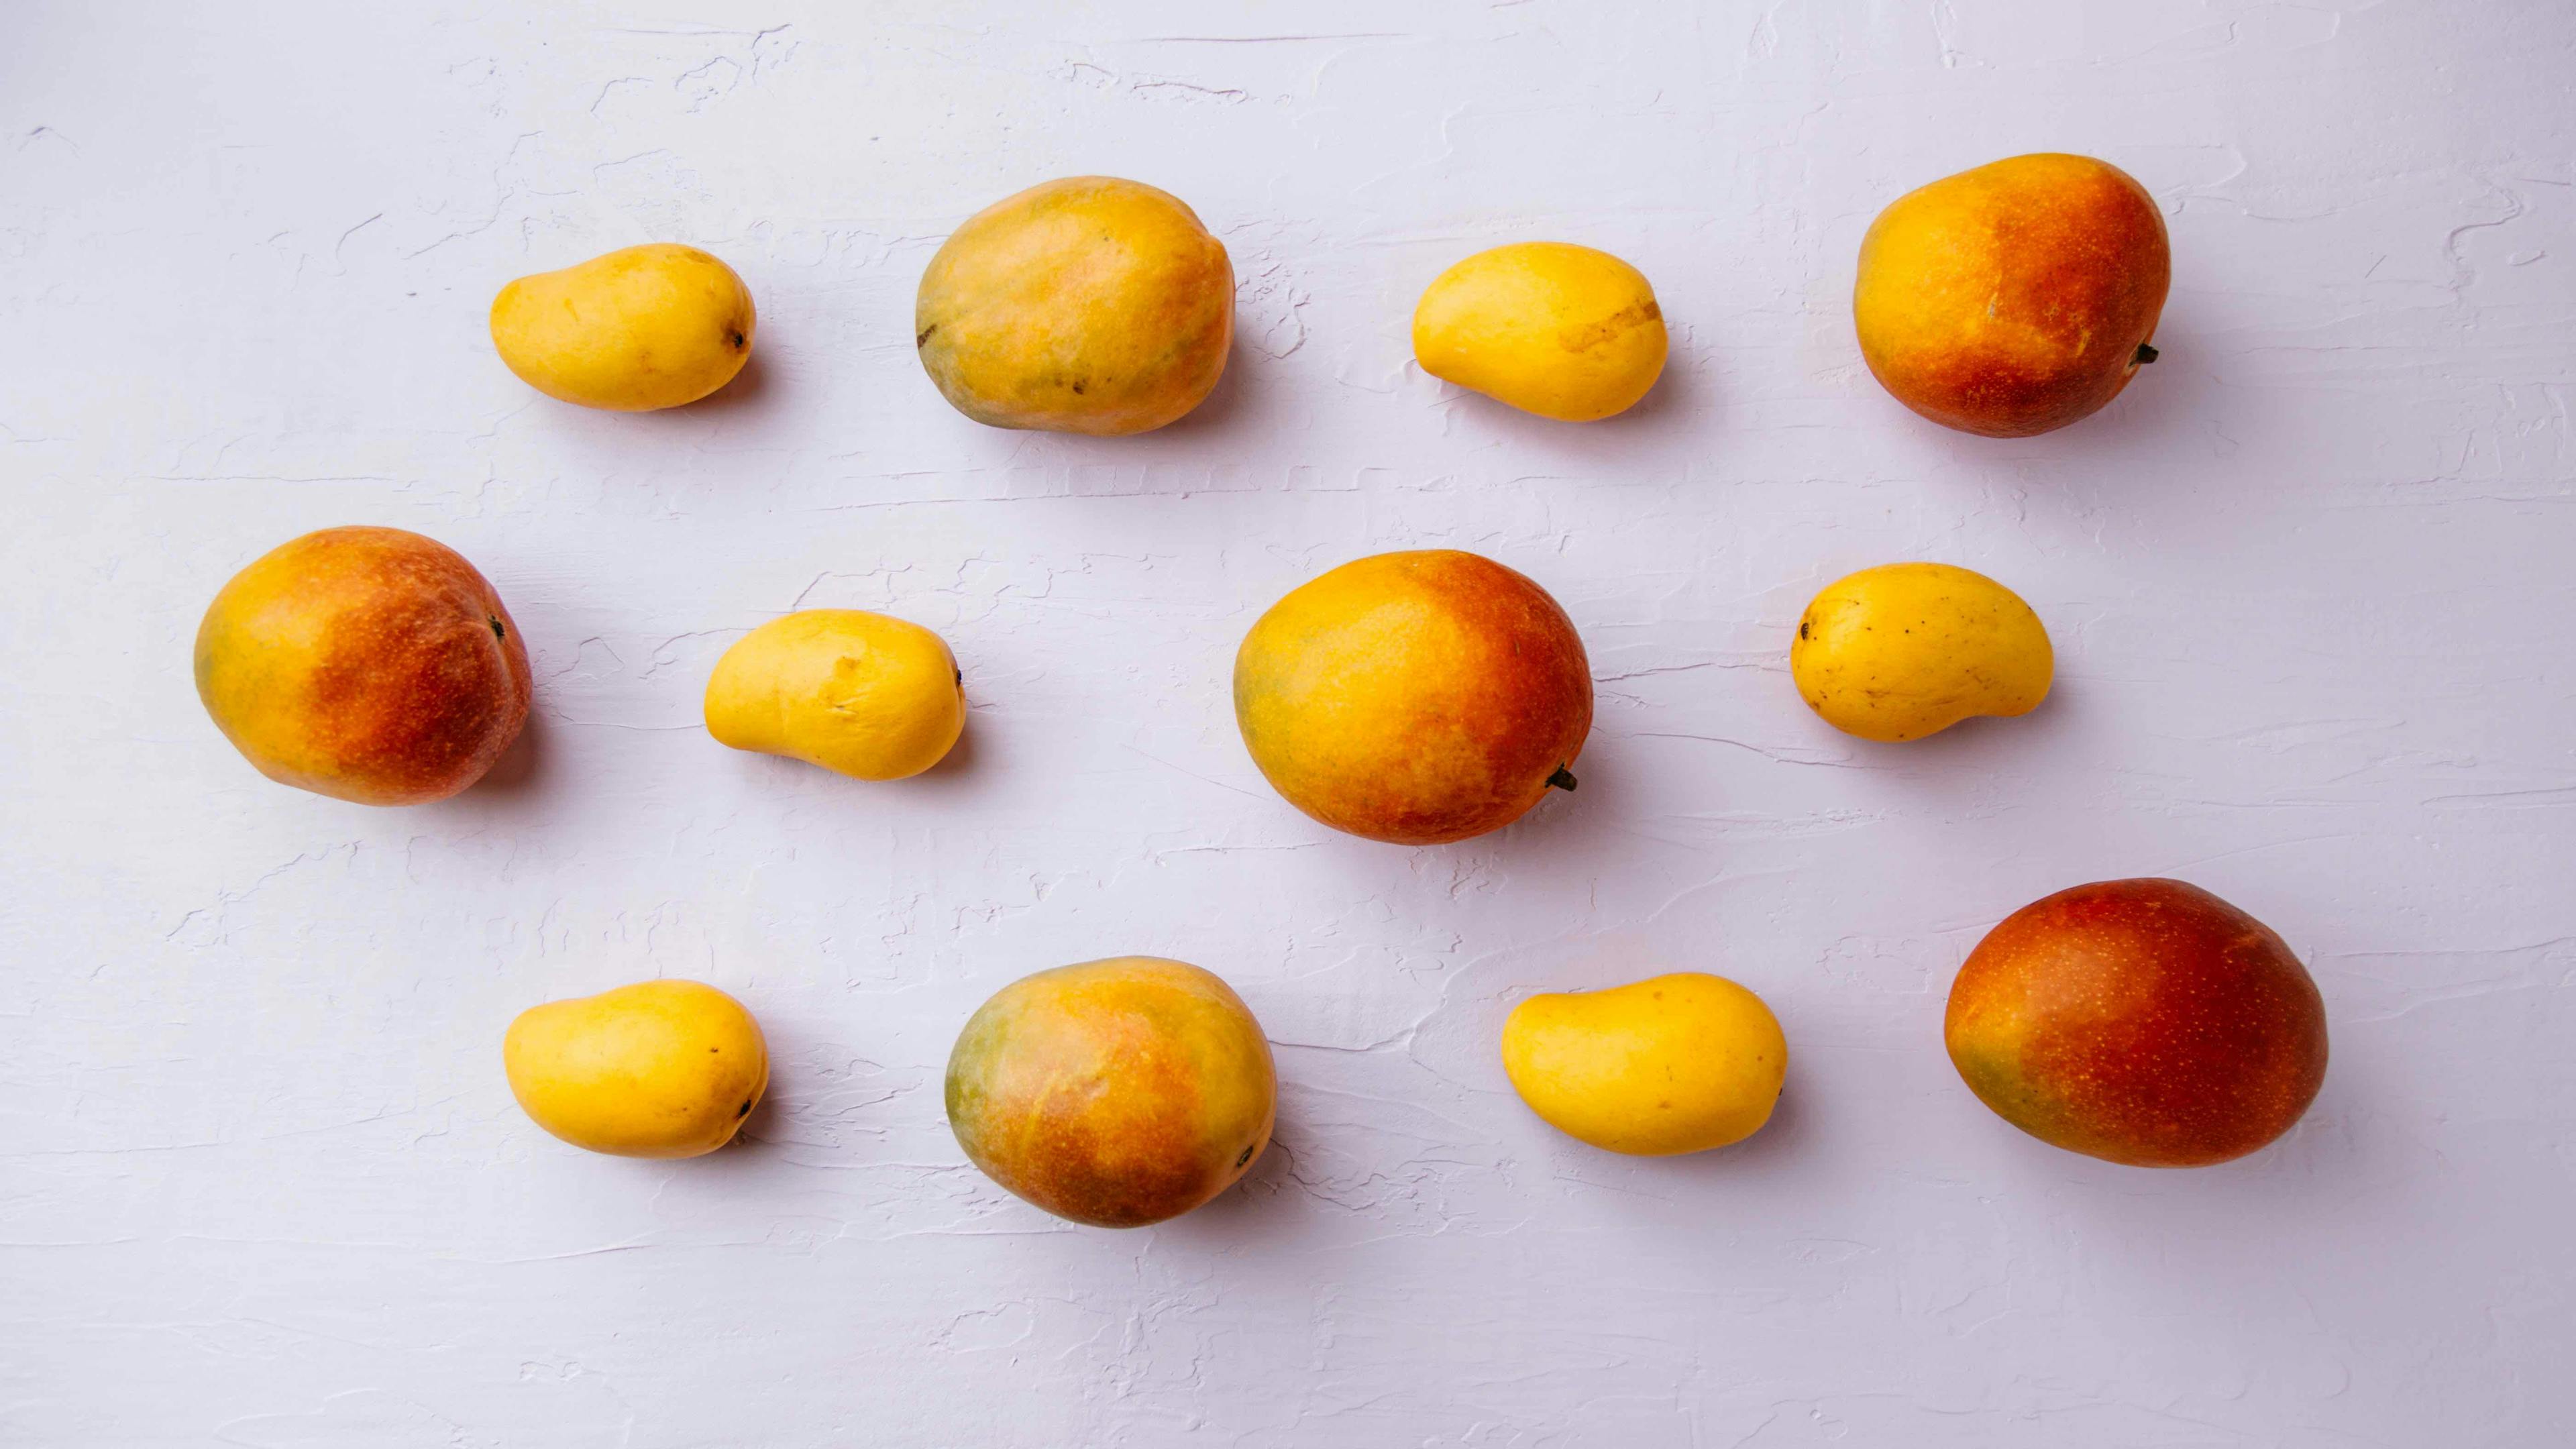 tim-chow-v8ZamcaZIVE-unsplash - mangos mango mangoes small